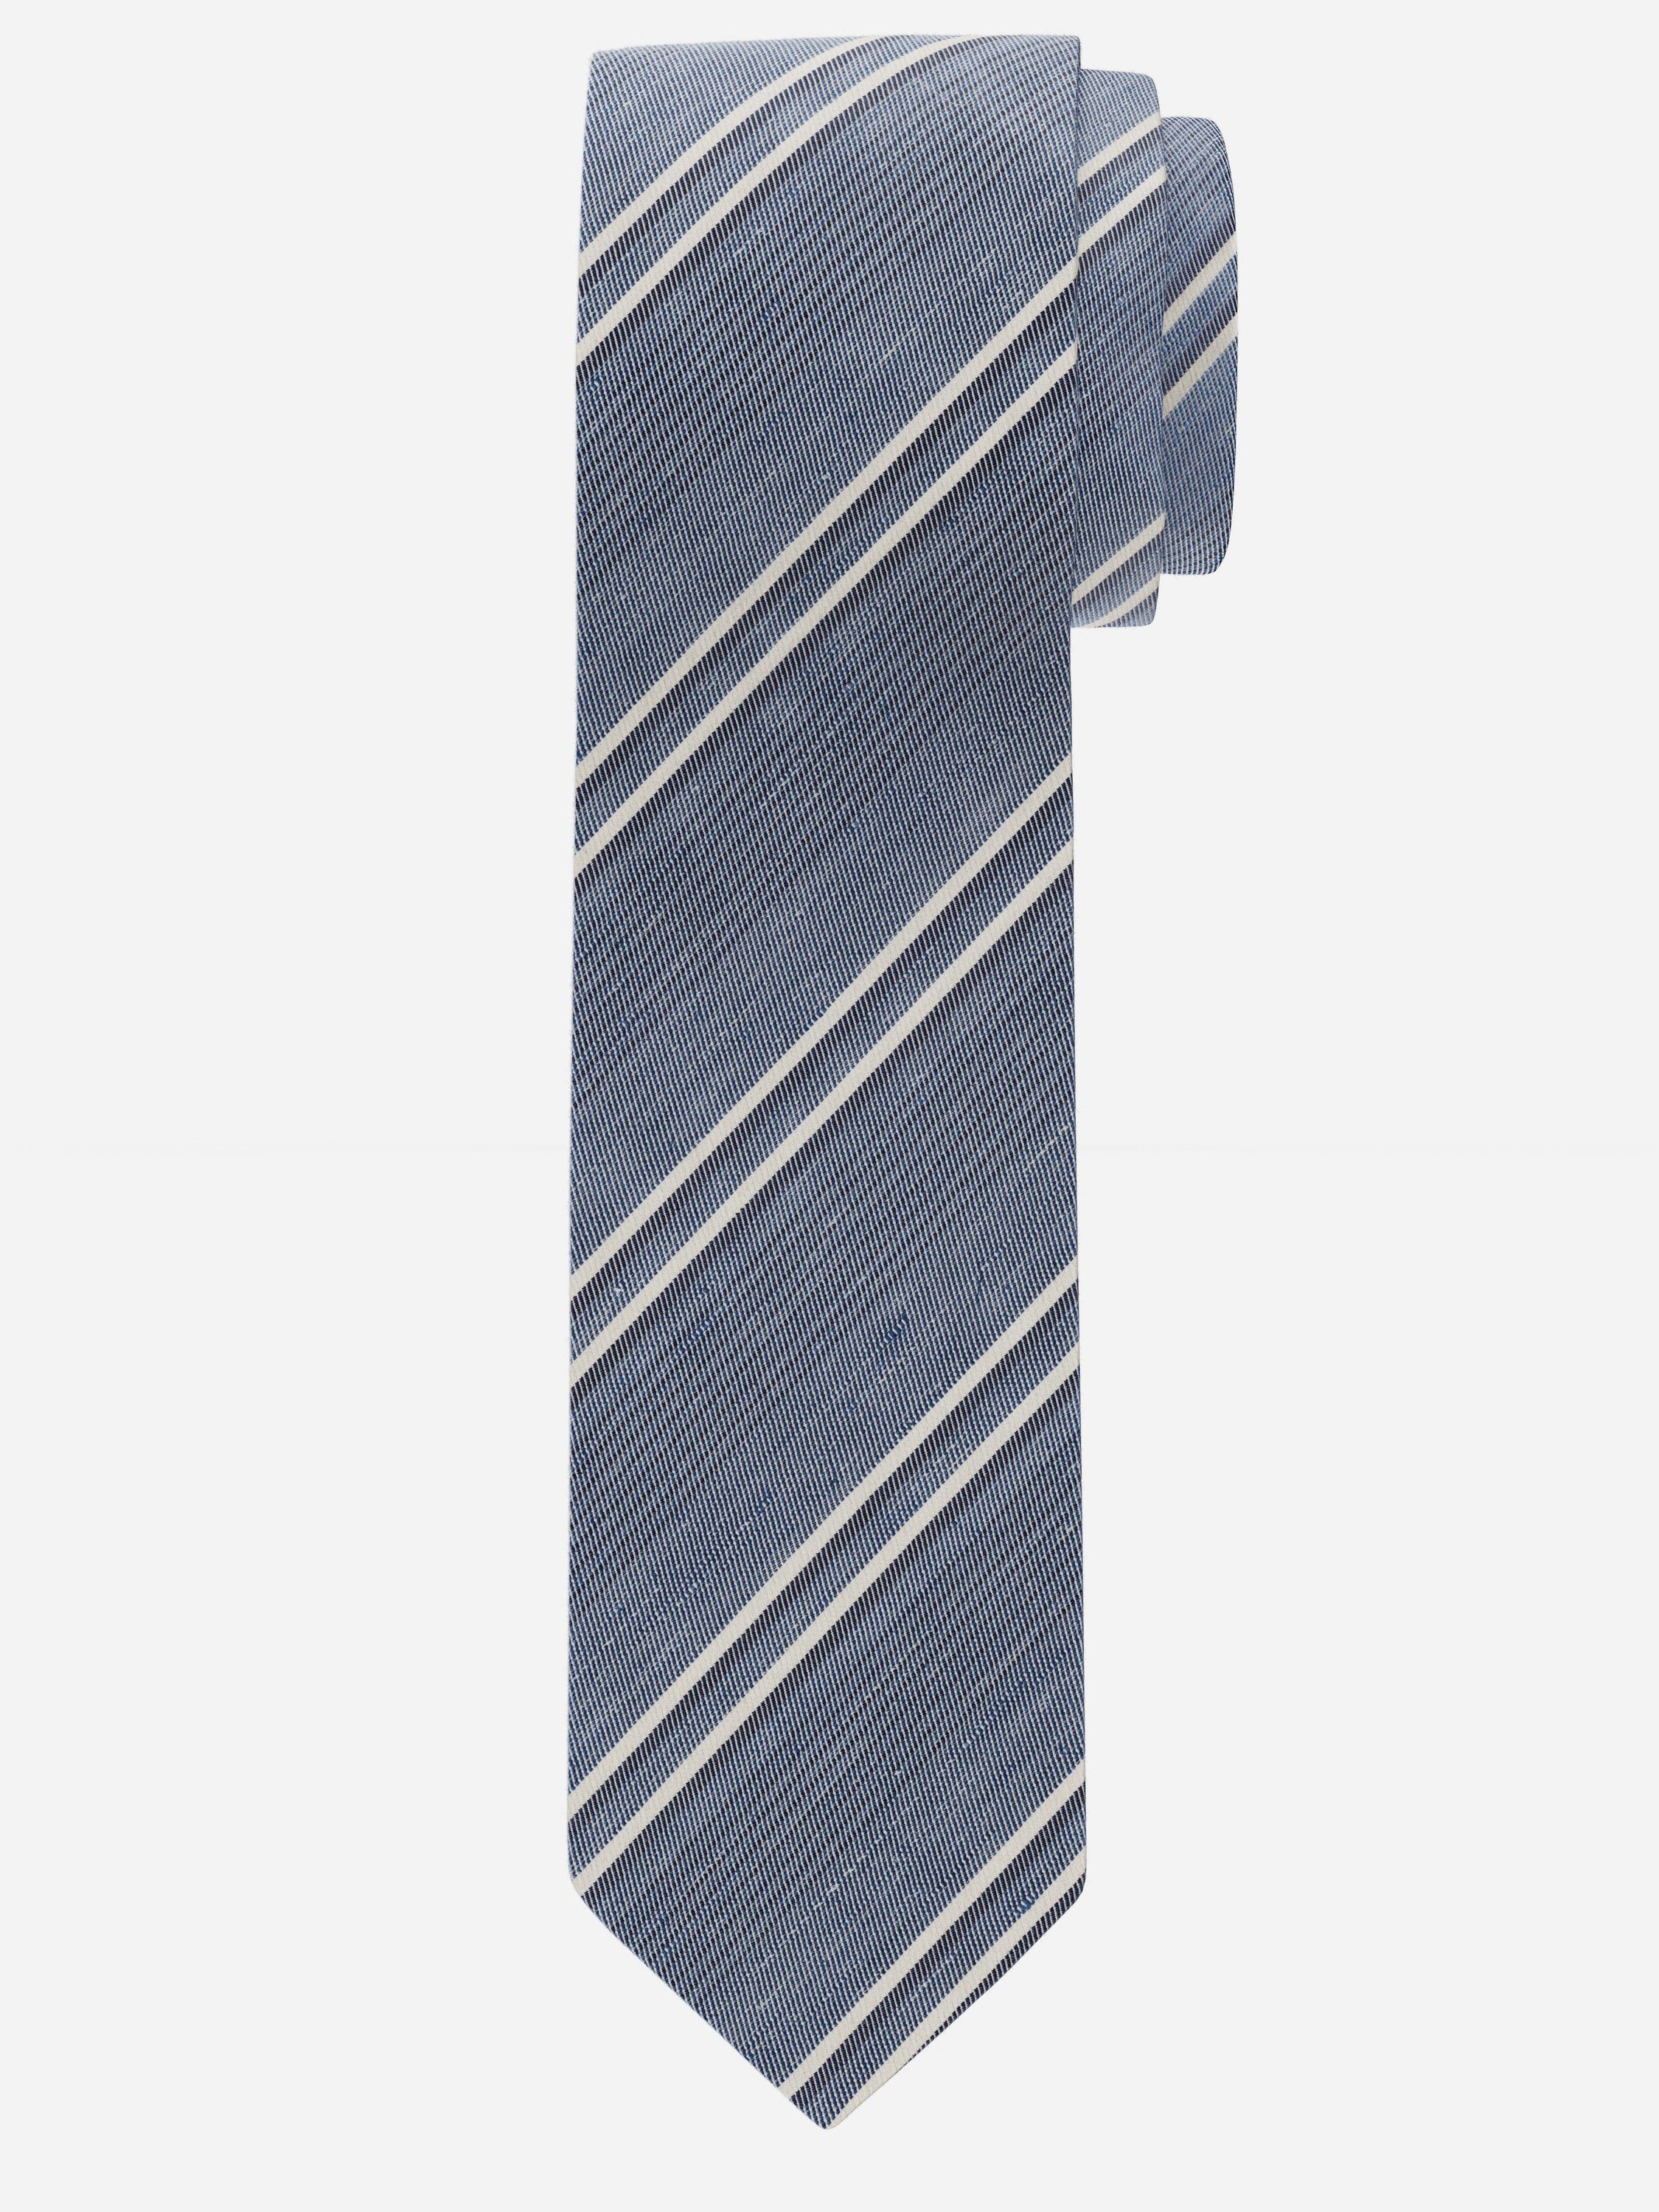 OLYMP Krawatte 15 blau